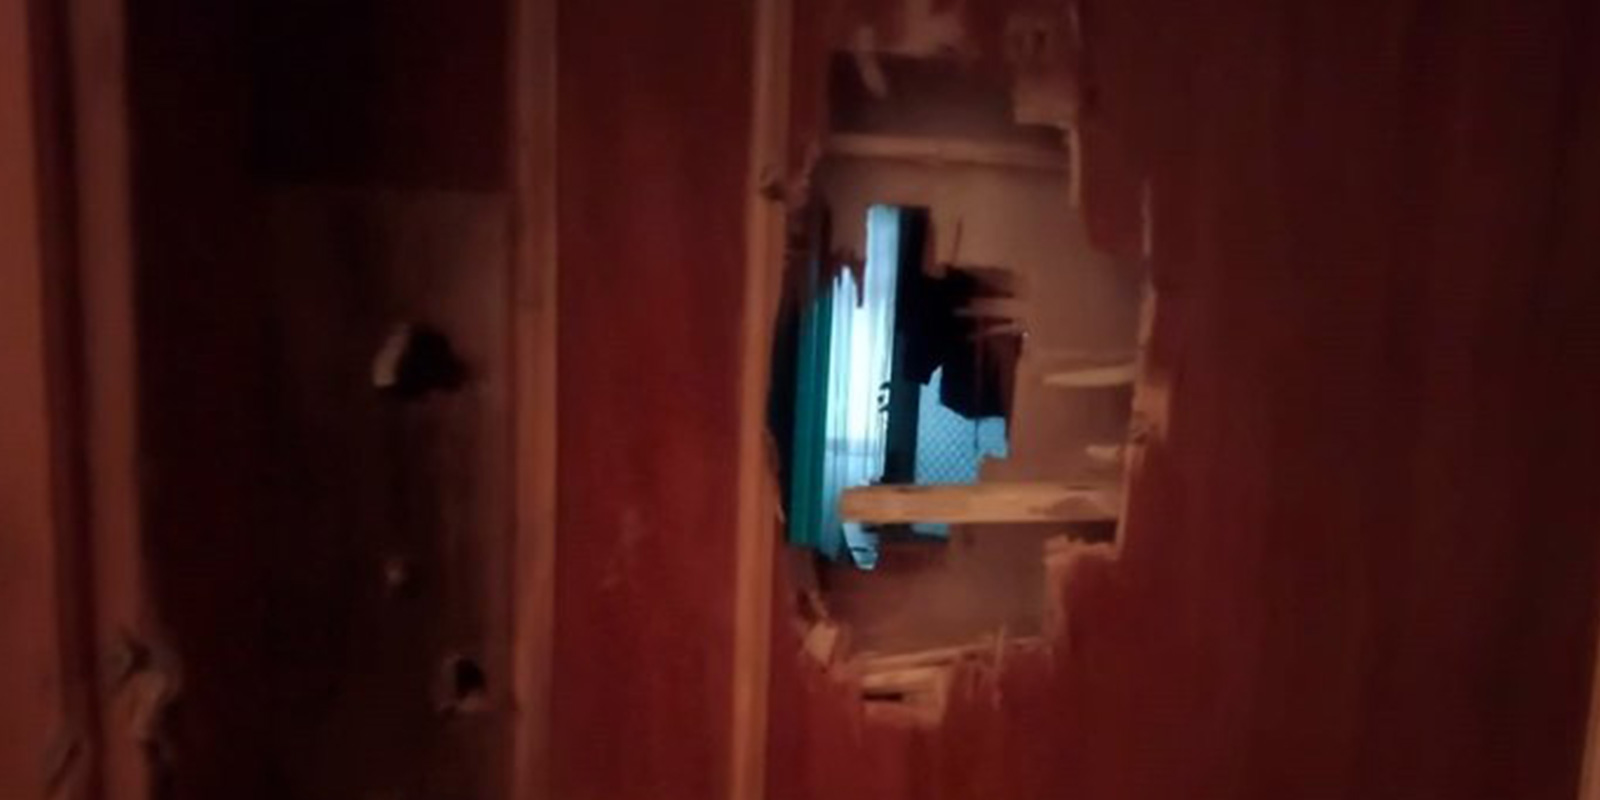 Tepki çeken görüntü! Ev sahibi, Suriyeli kiracılarına baltayla saldırdı